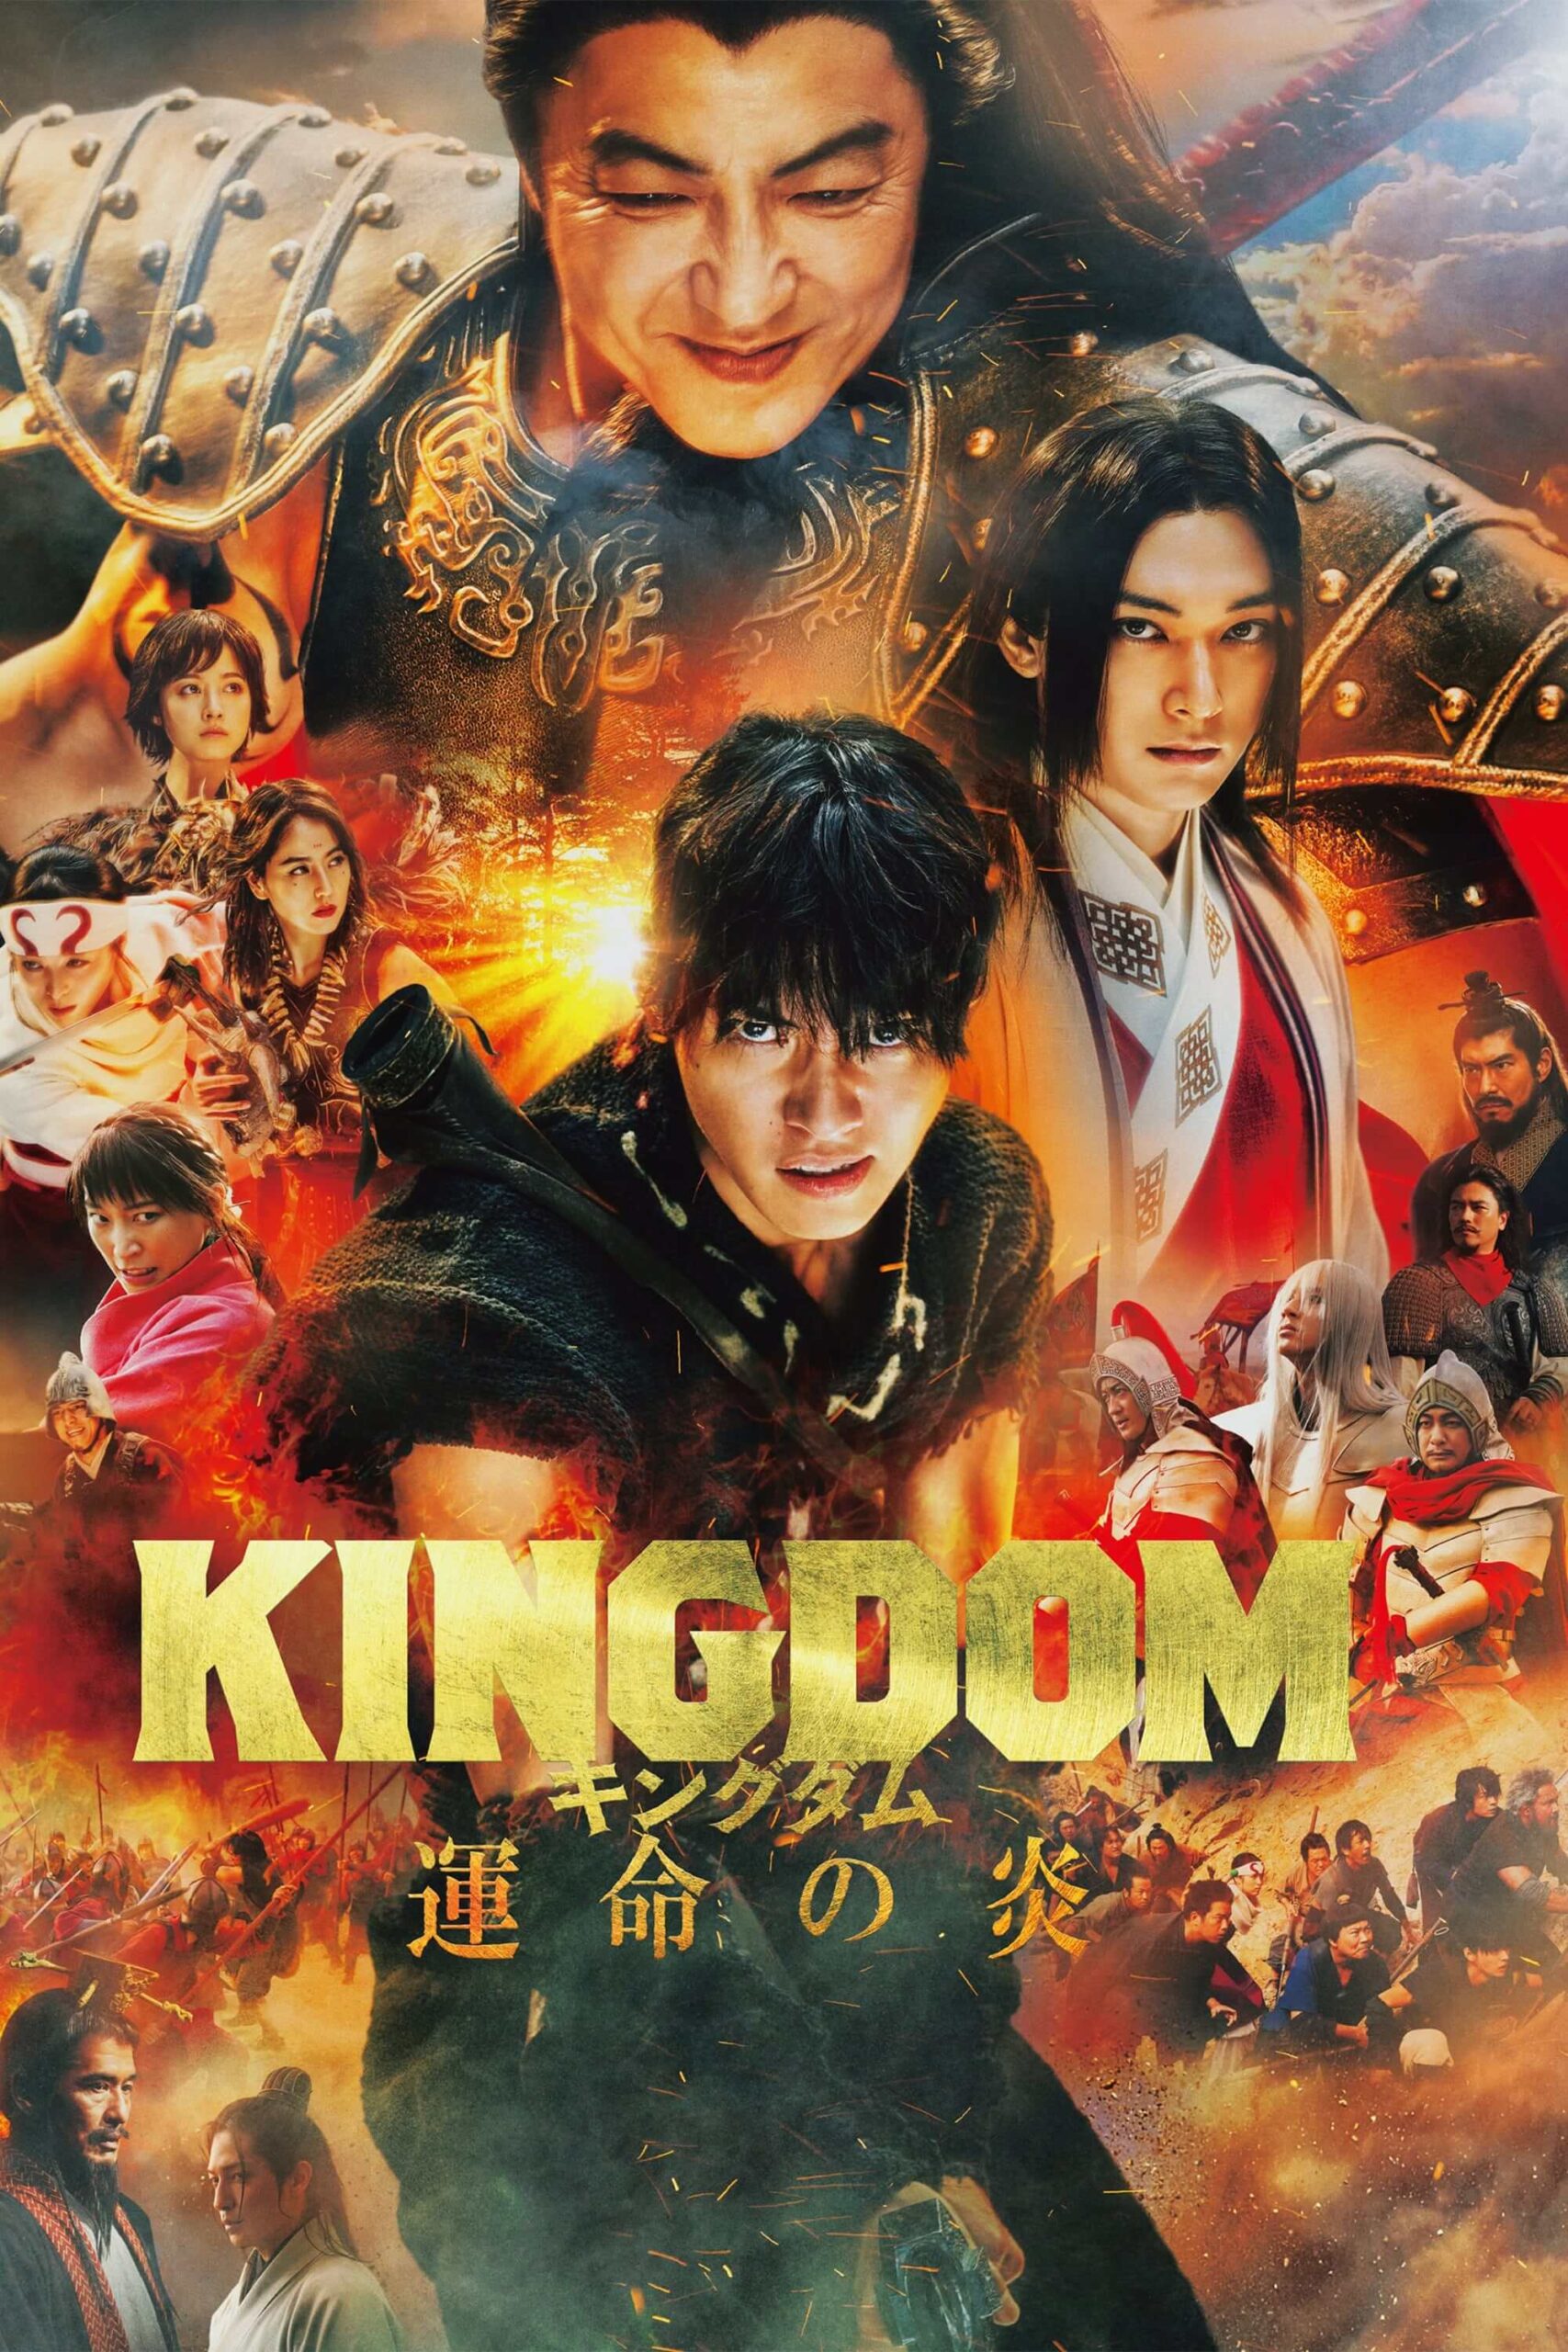 پادشاهی 3 (Kingdom 3)